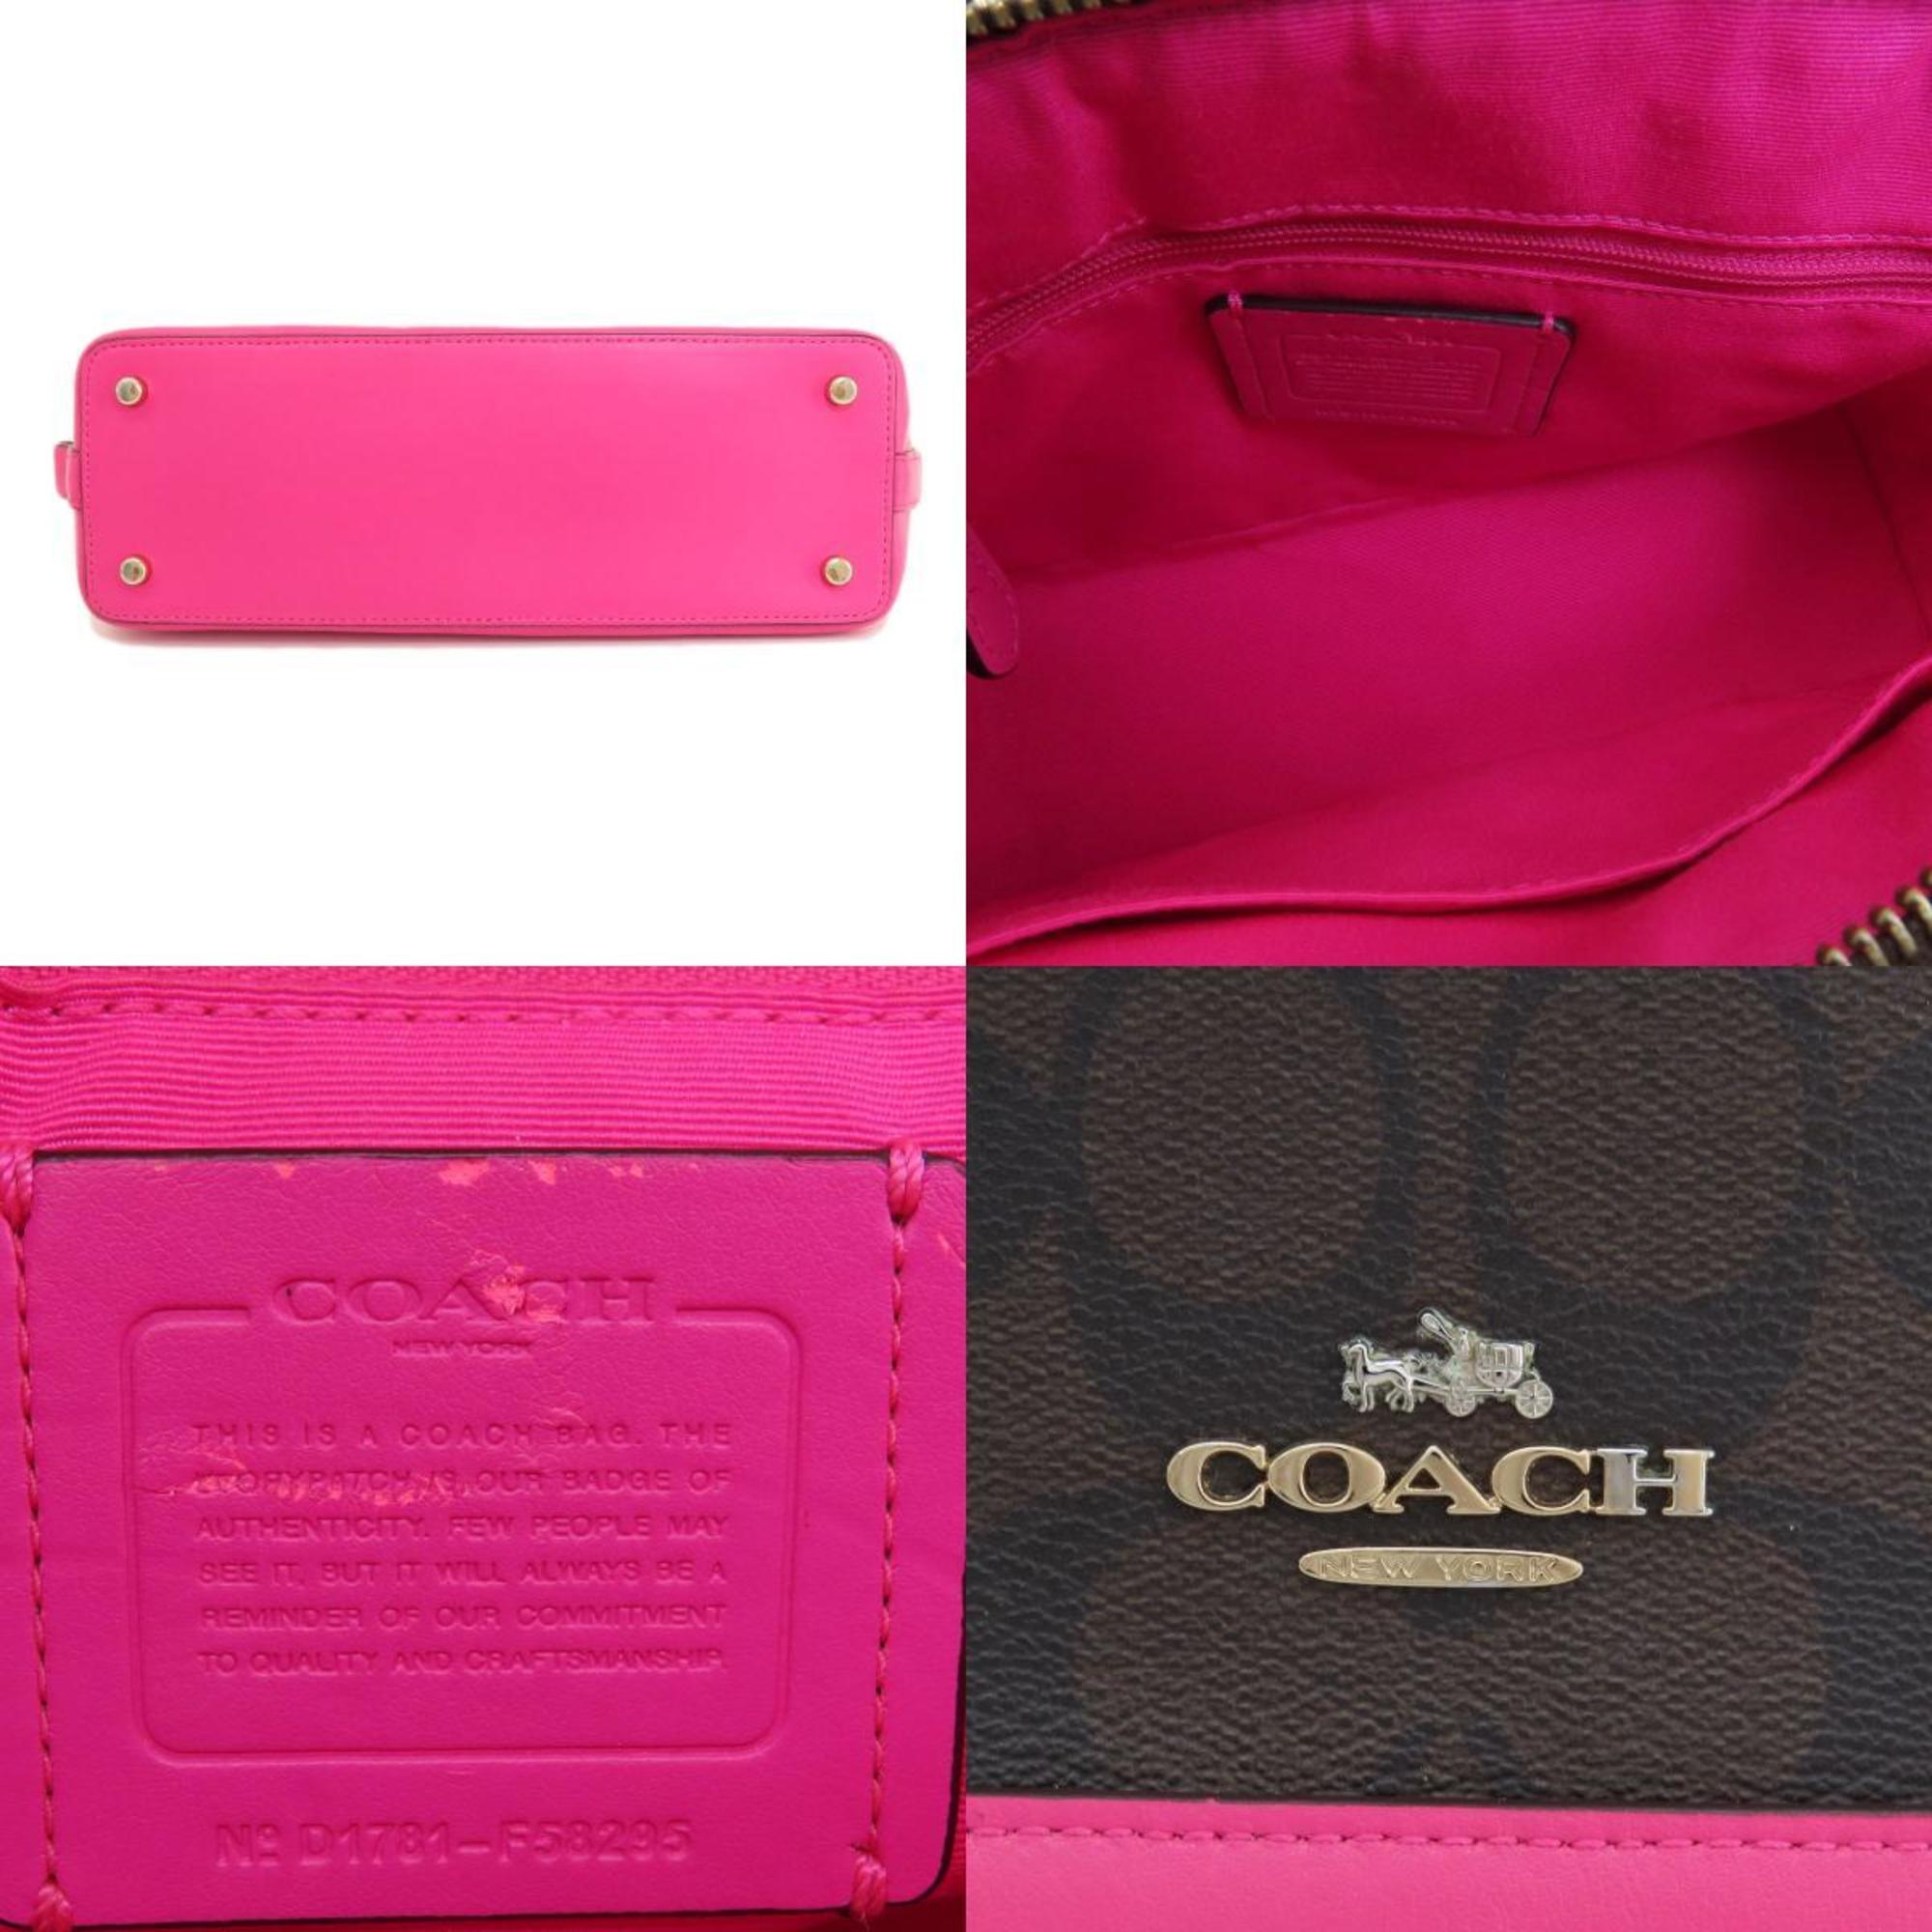 Coach F58295 Signature Handbag for Women